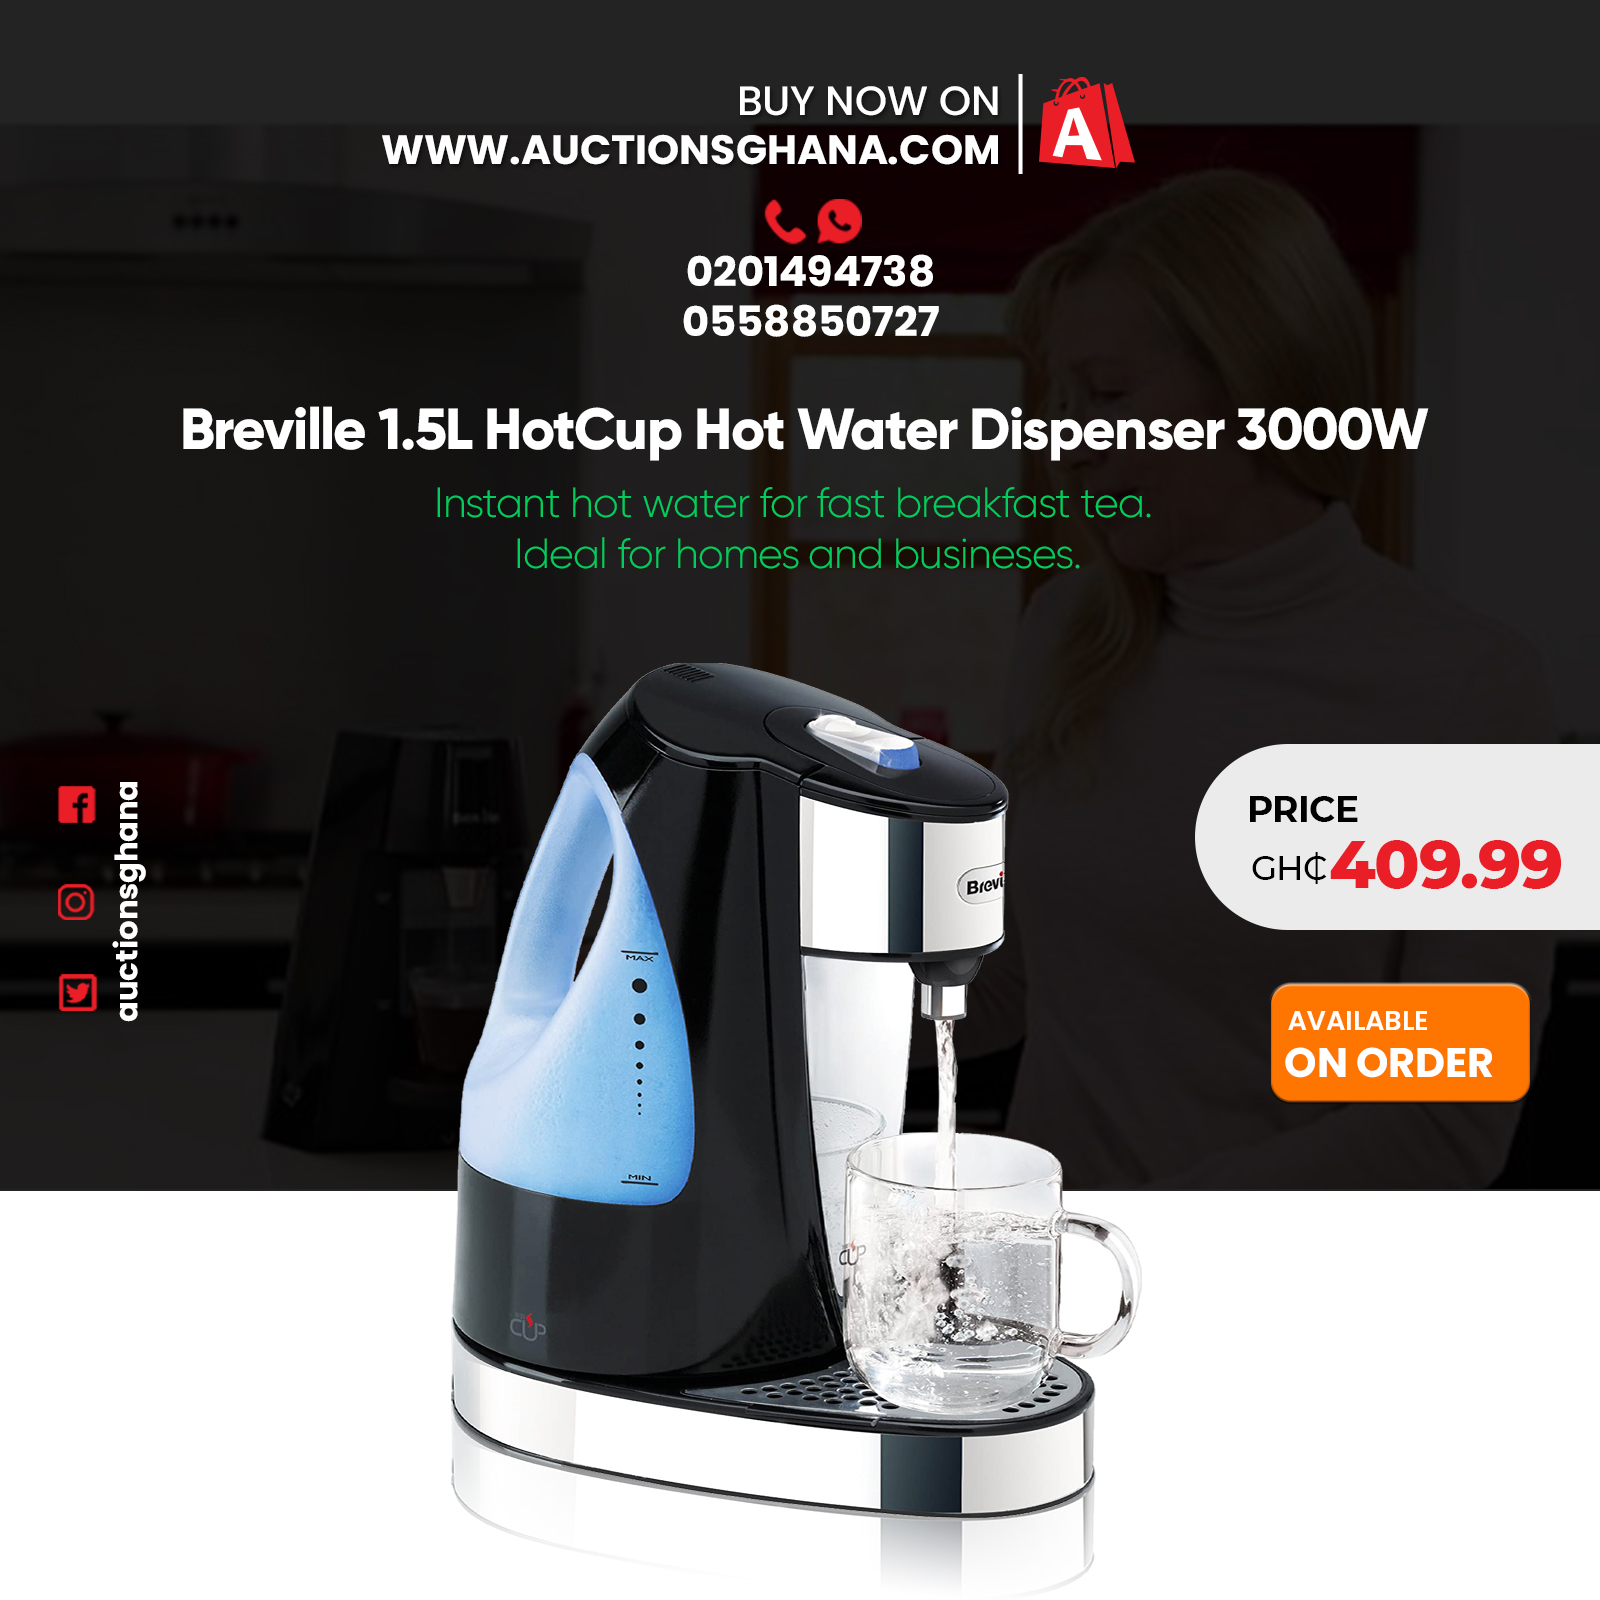 https://auctionsghana.com/wp-content/uploads/2021/06/Breville-1.5L-HotCup-Hot-Water-Dispenser.jpg